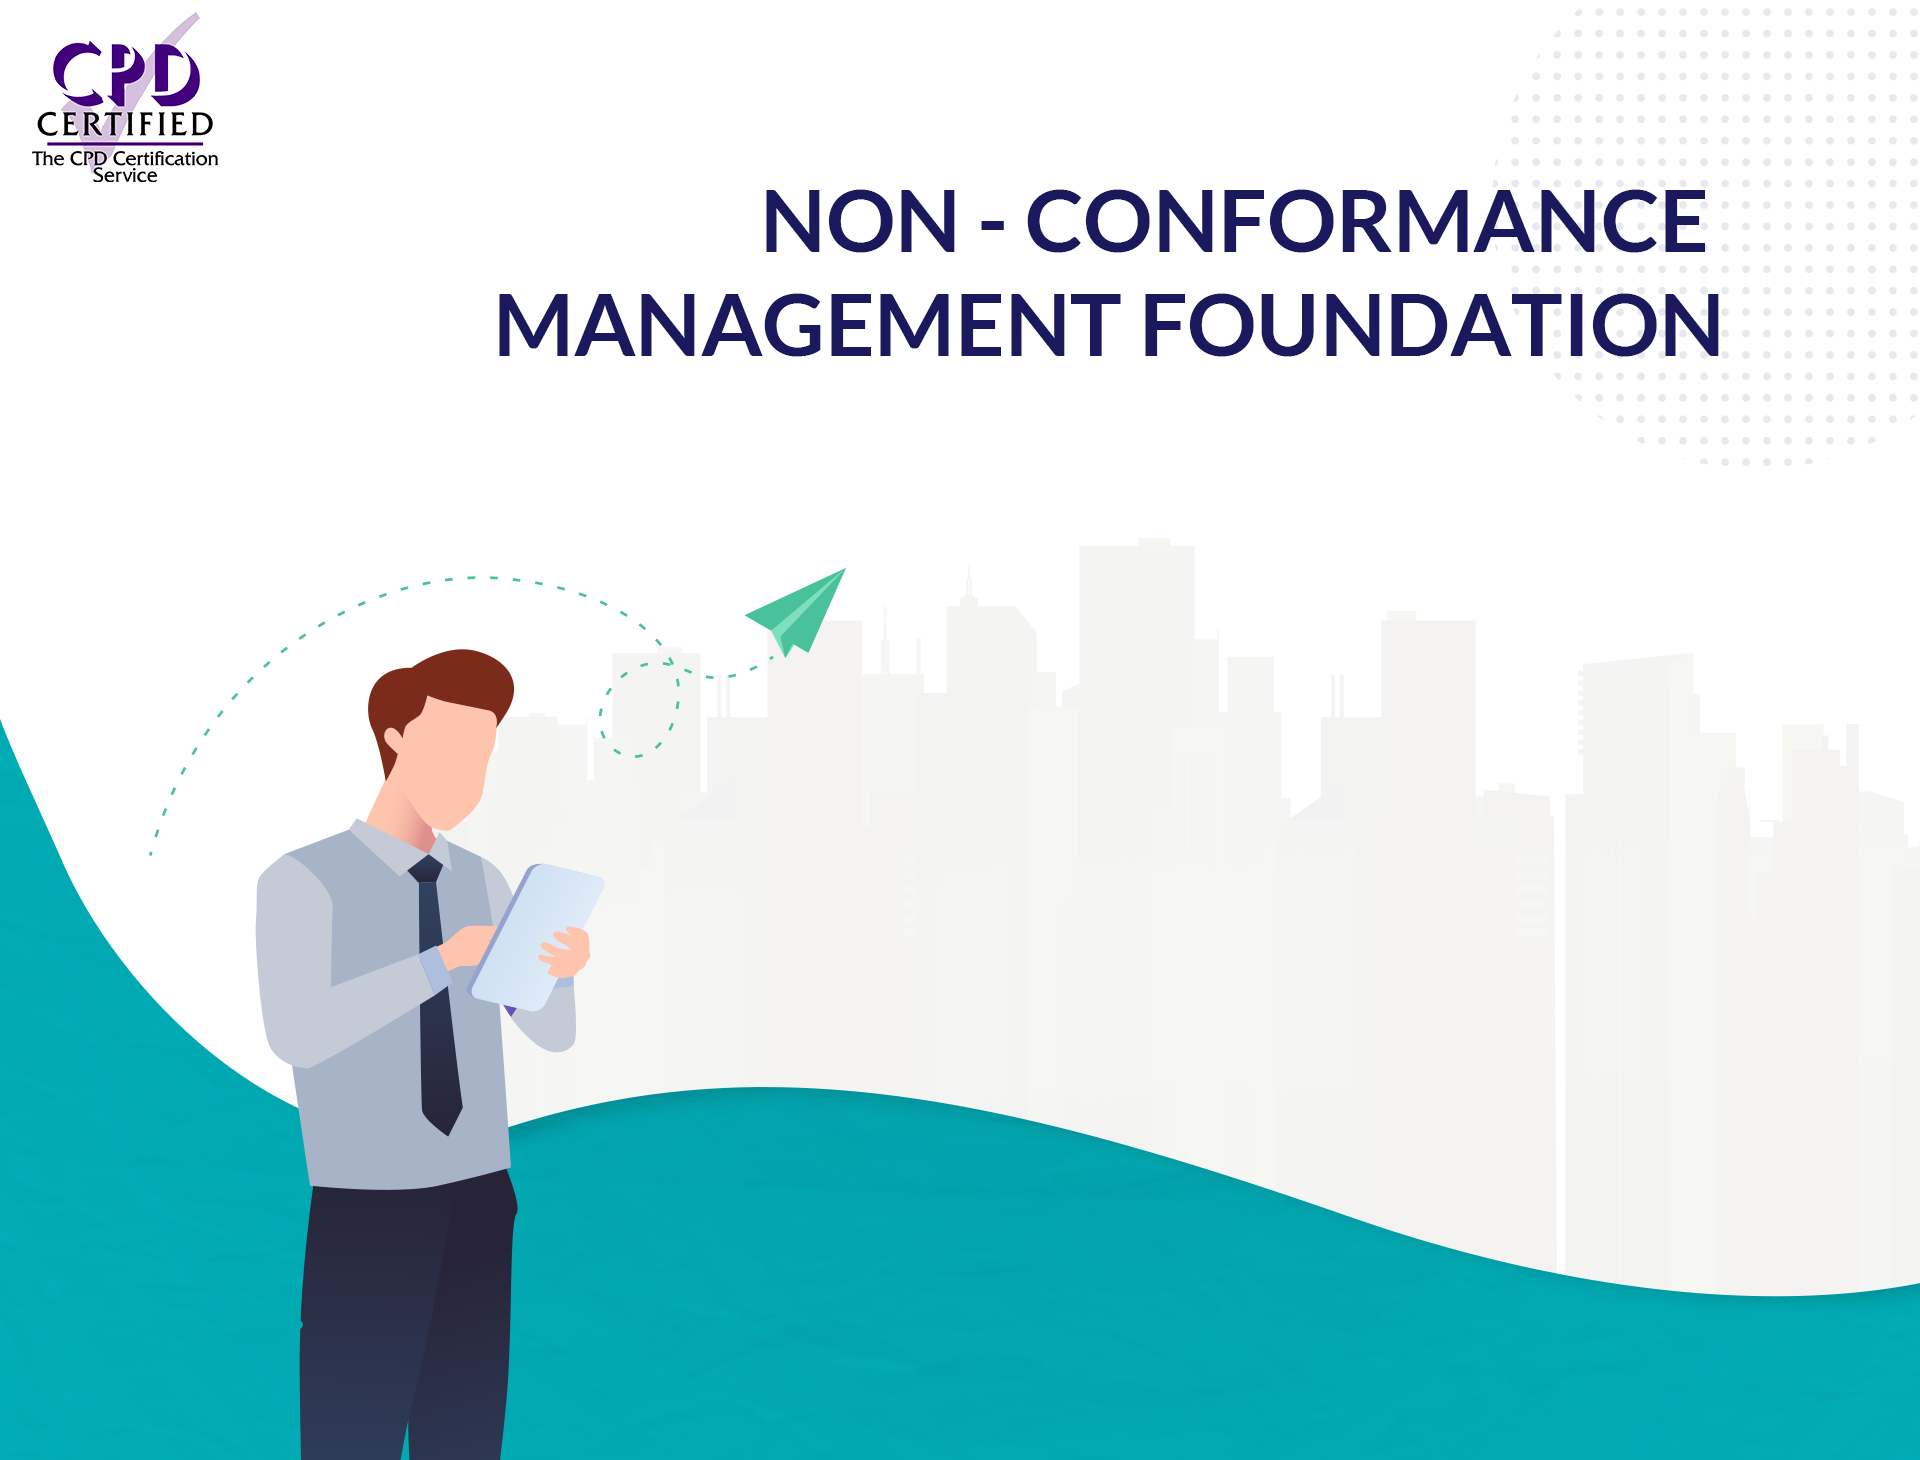 Non-conformance Management Foundation